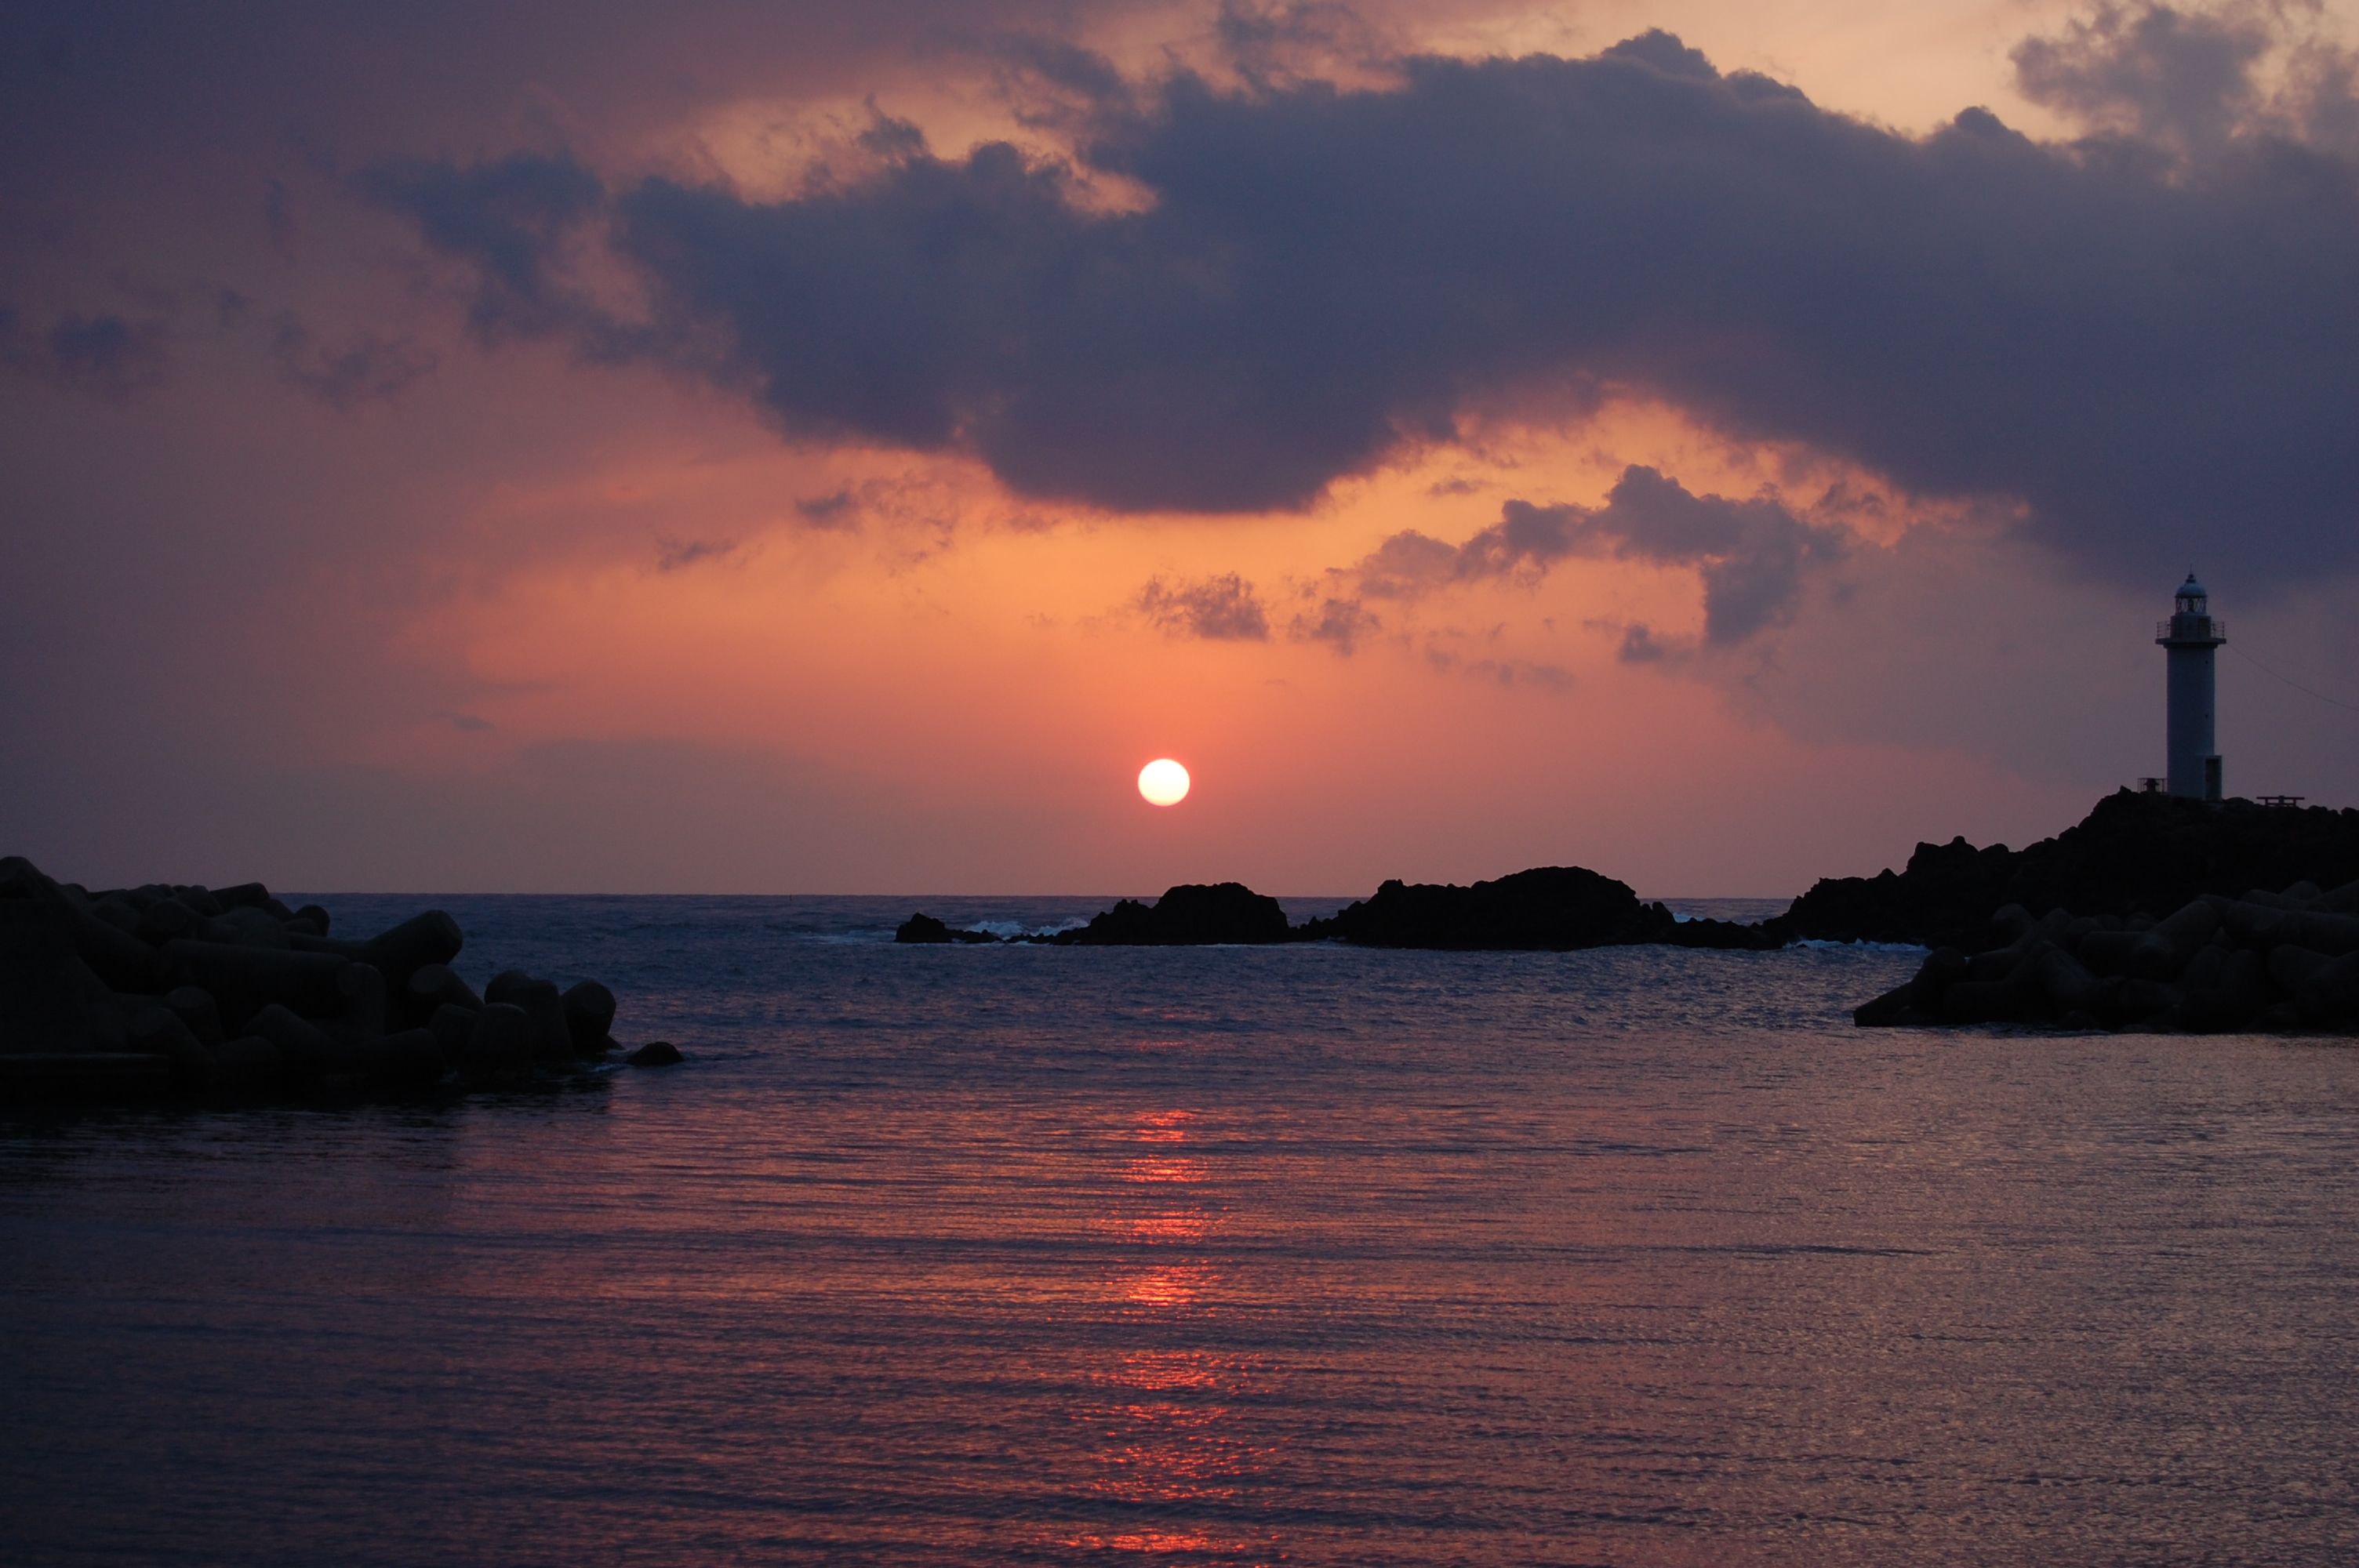 【山形県庄内鼠ヶ関】日本海の夕日を一望できる絶景スポットのすすめ